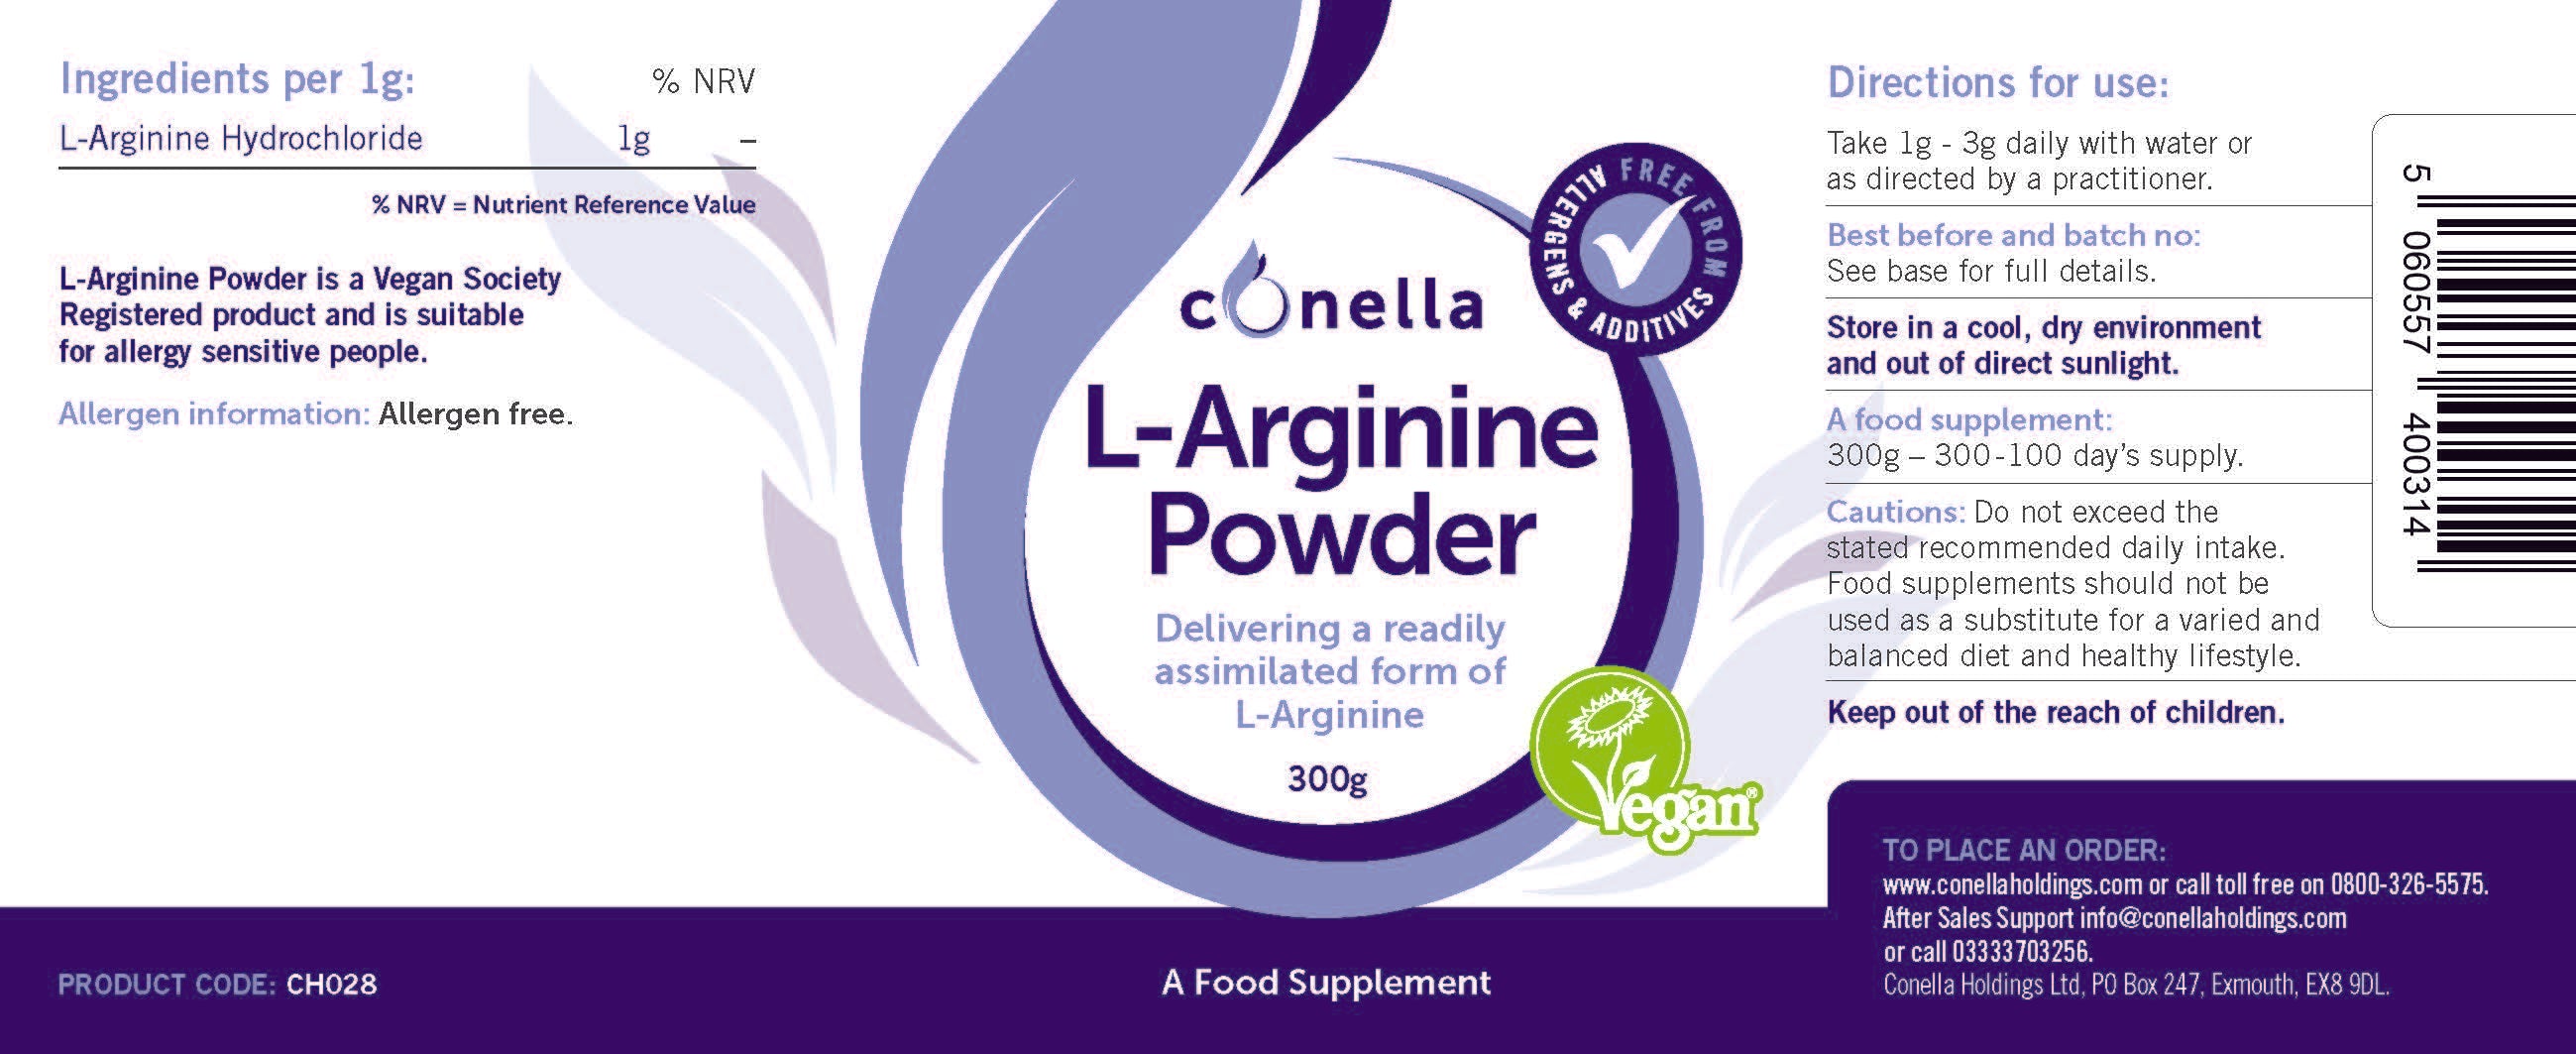 Conella L-Arginine Powder 300g